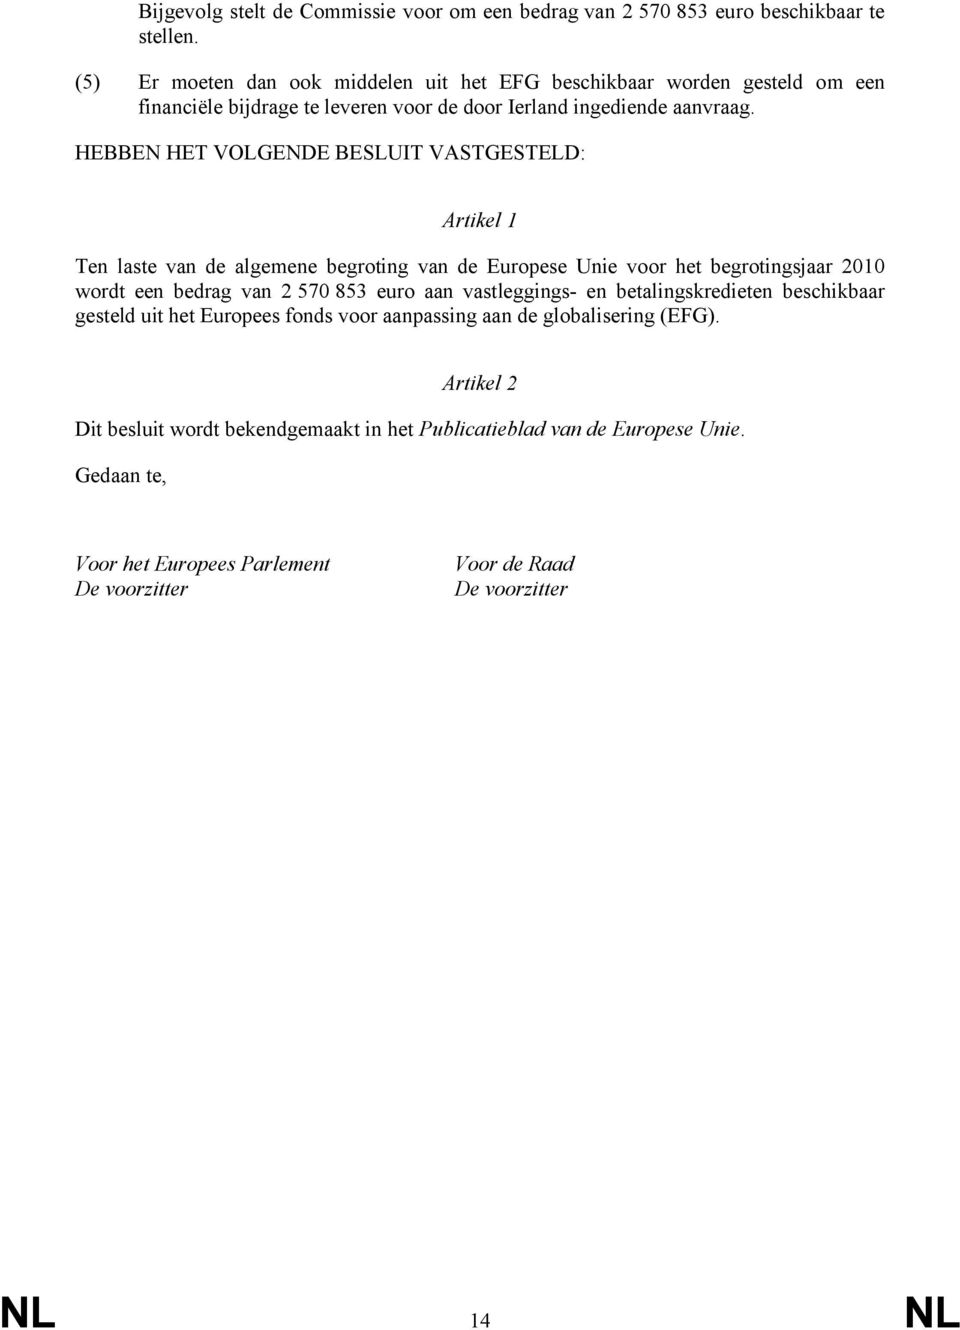 HEBBEN HET VOLGENDE BESLUIT VASTGESTELD: Artikel 1 Ten laste van de algemene begroting van de Europese Unie voor het begrotingsjaar 2010 wordt een bedrag van 2 570 853 euro aan